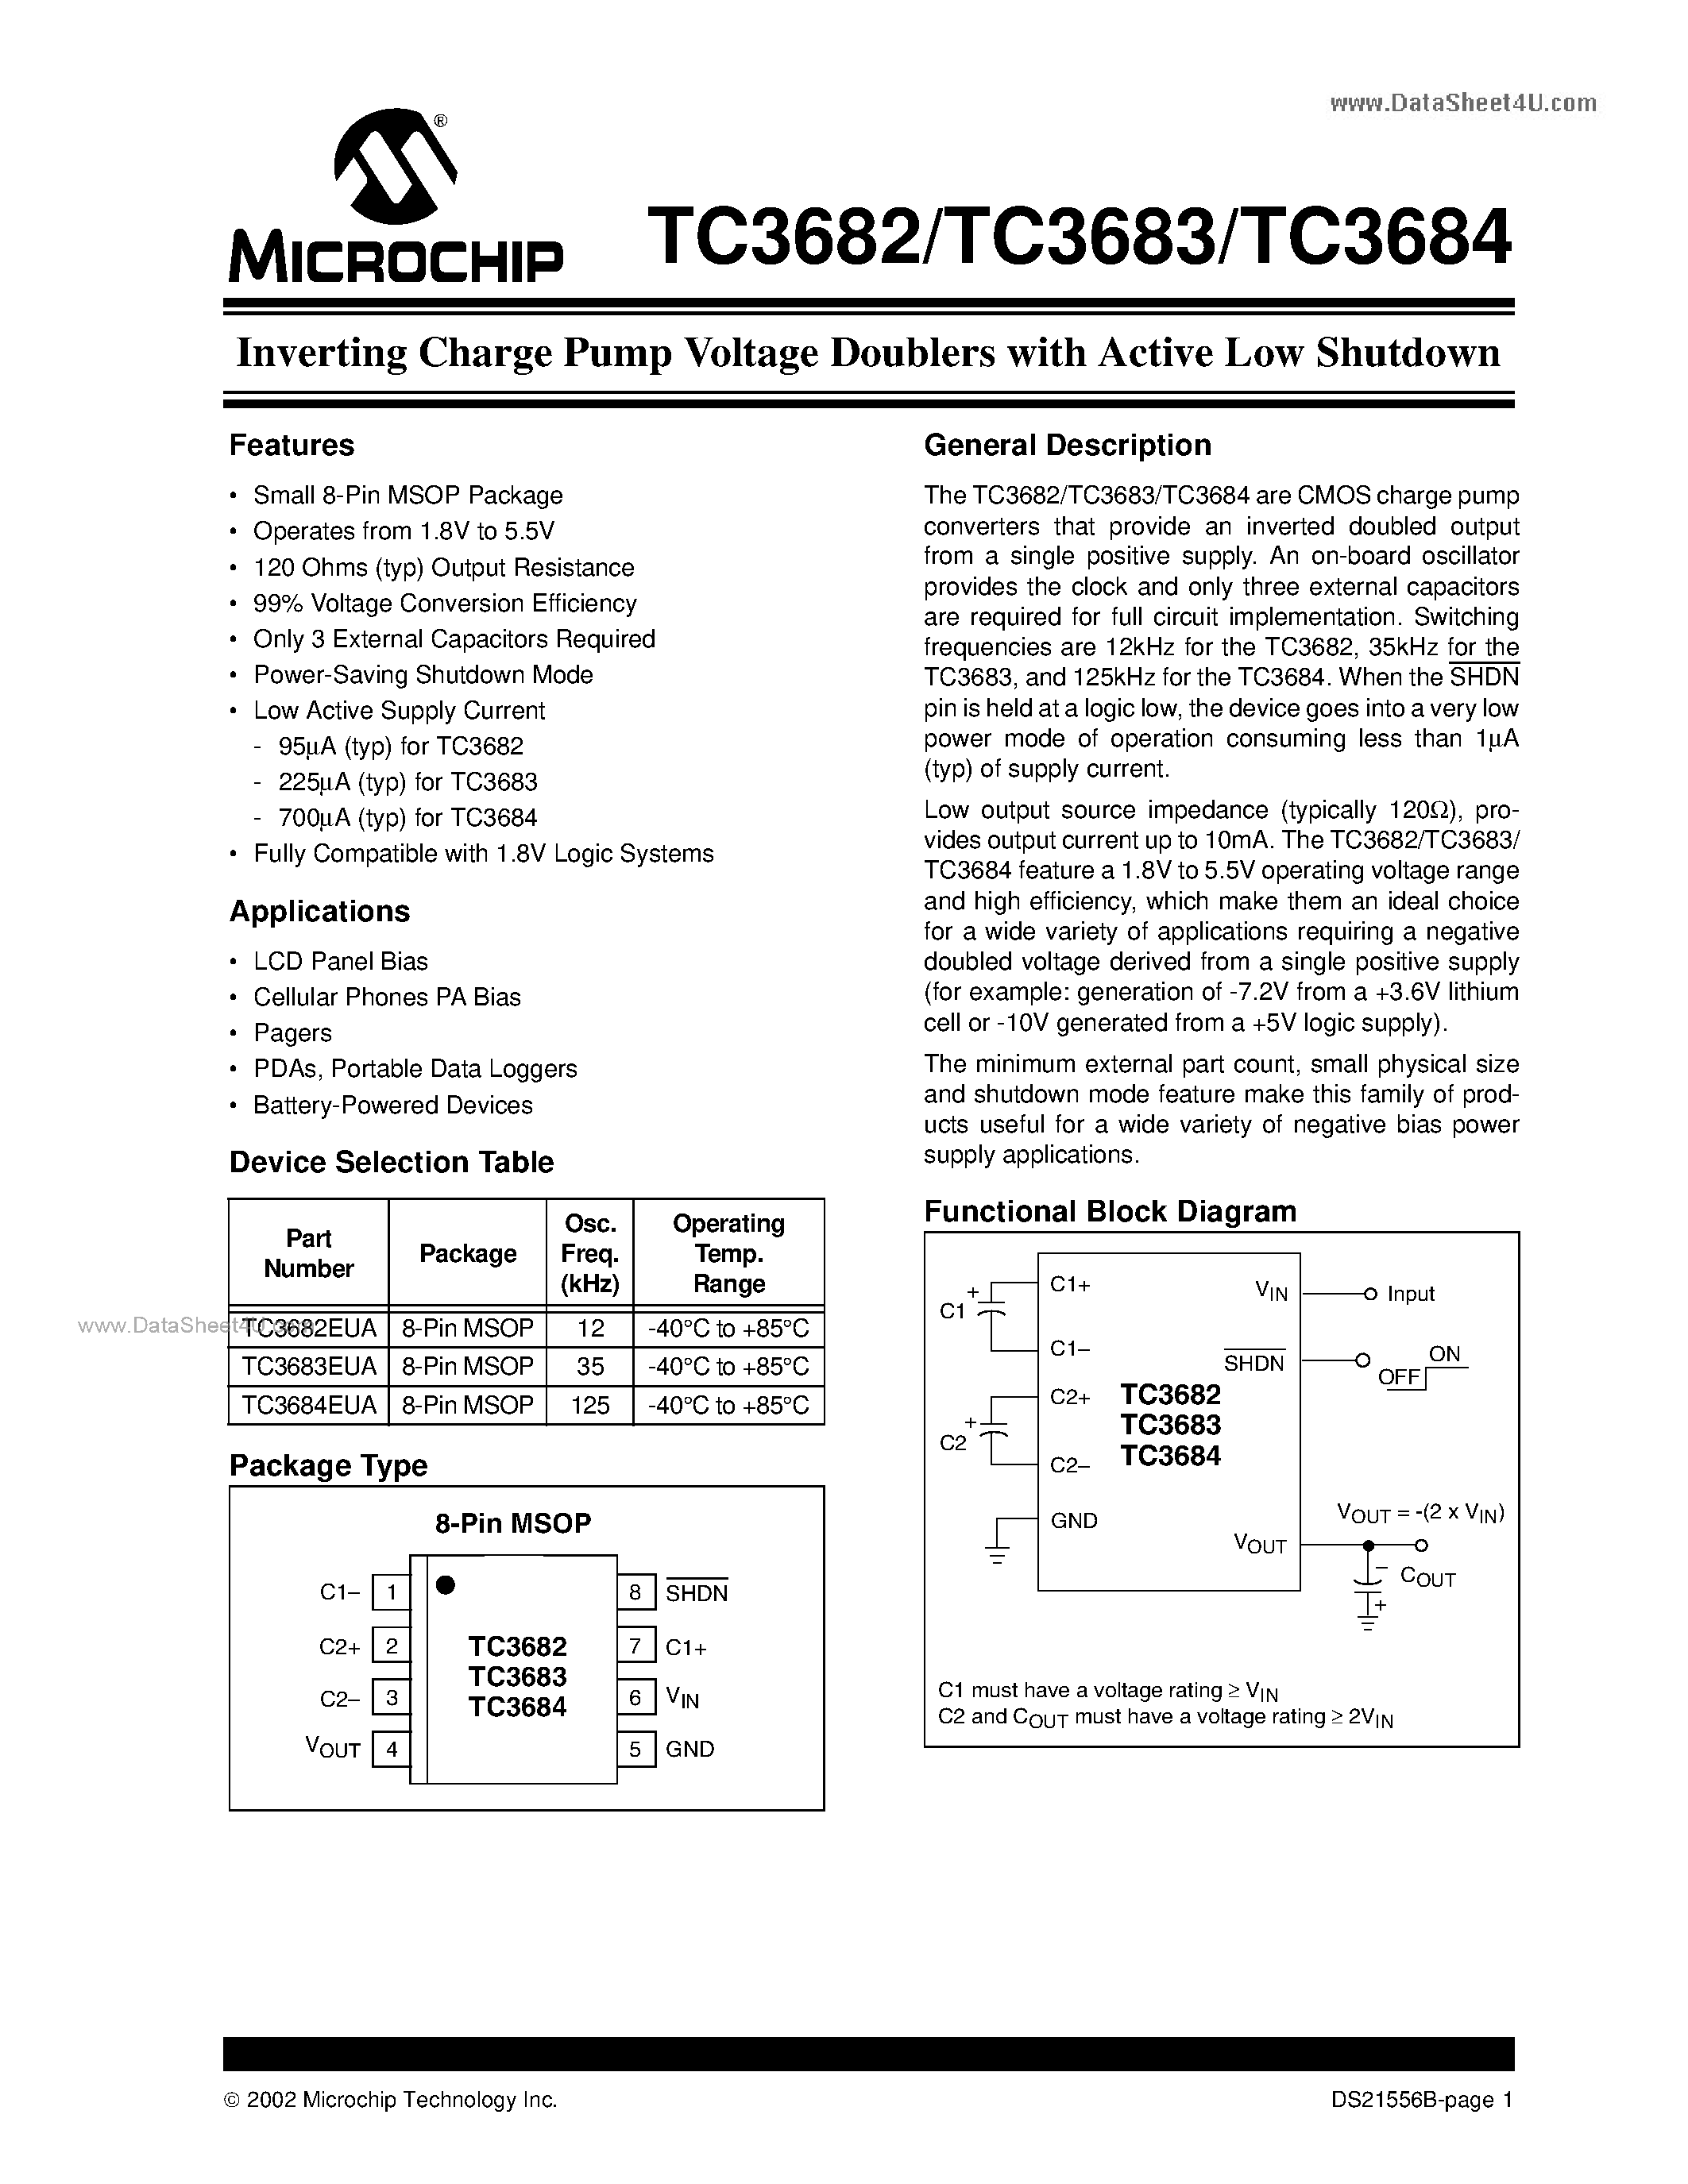 Даташит TC3682-(TC3682 - TC3684) Inverting Charge Pump Voltage Doublers страница 1